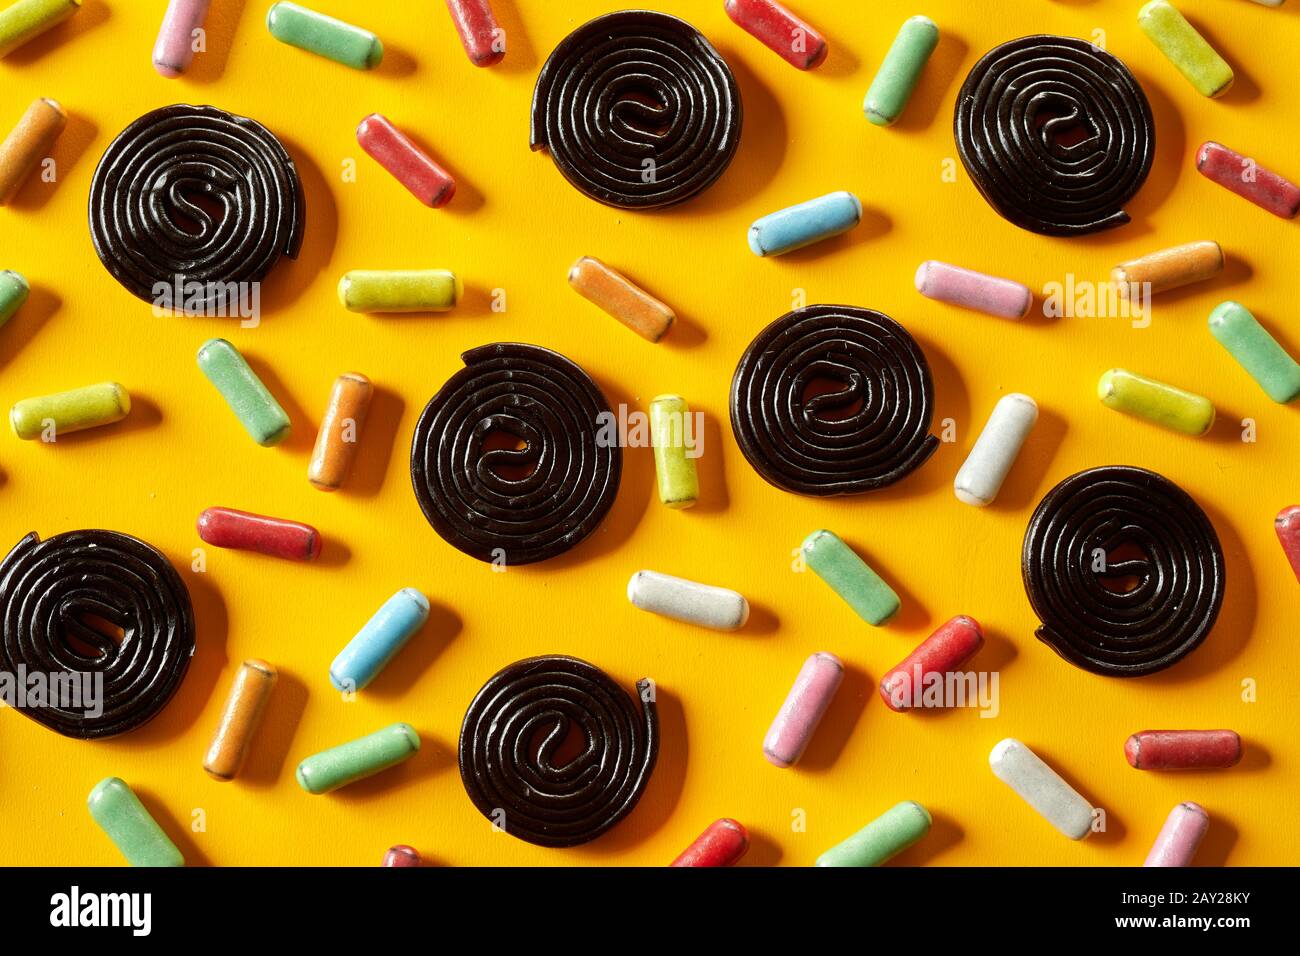 Espirales de regaliz y caramelos recubiertos de azúcar dispuestos en un patrón aleatorio sobre un exótico fondo amarillo en vista de fotograma completo Foto de stock